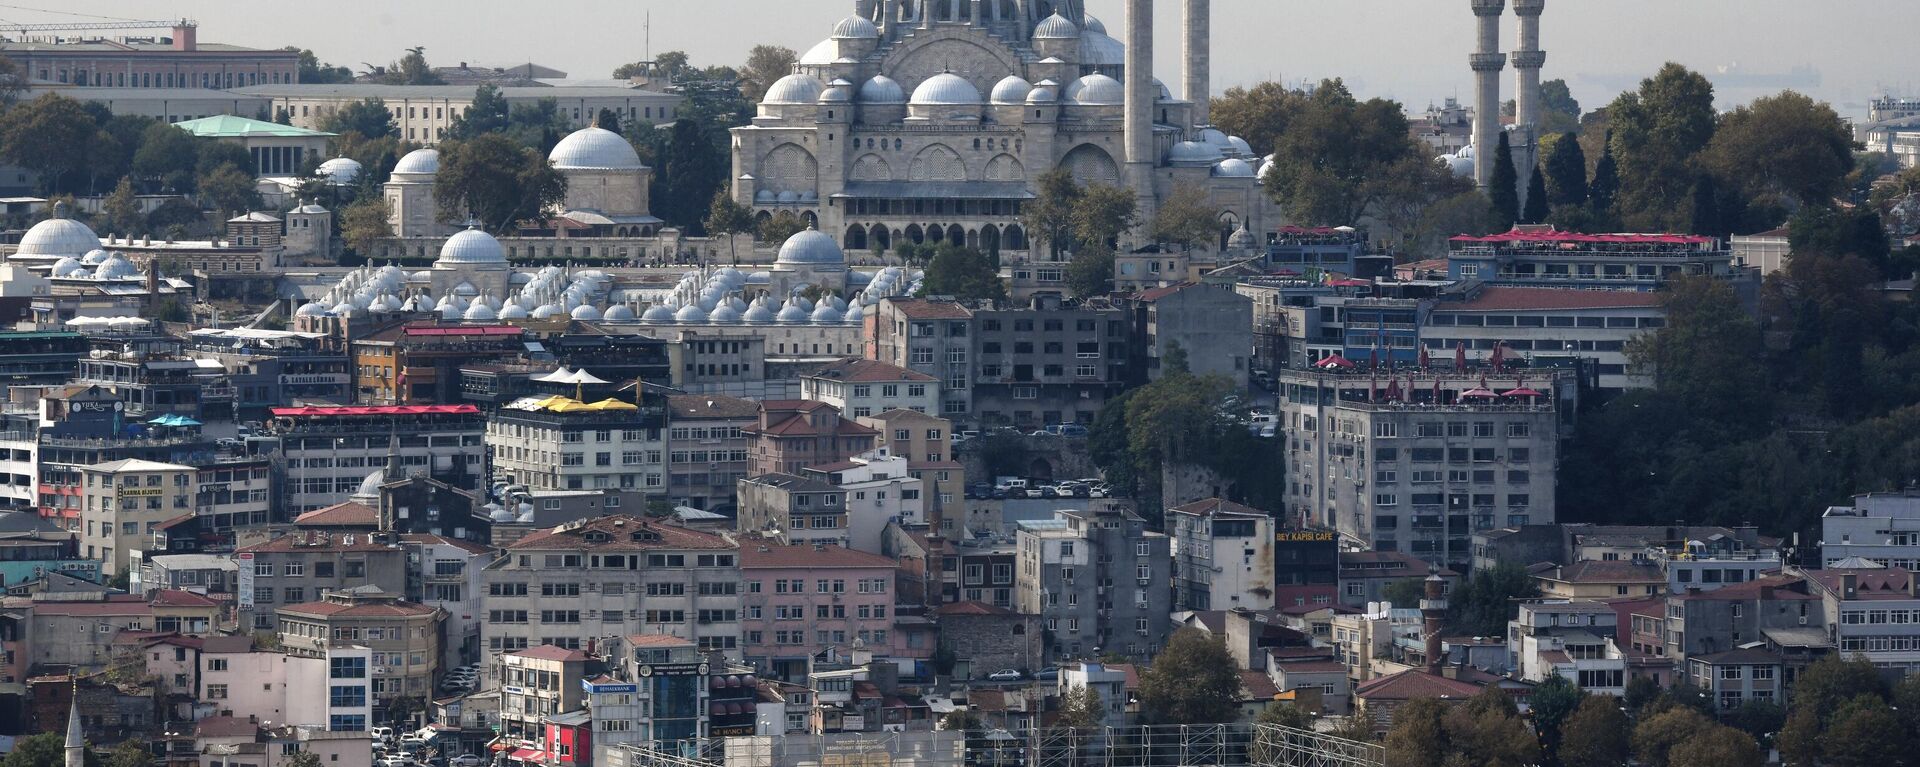 Города мира. Стамбул  - Sputnik Абхазия, 1920, 20.01.2022